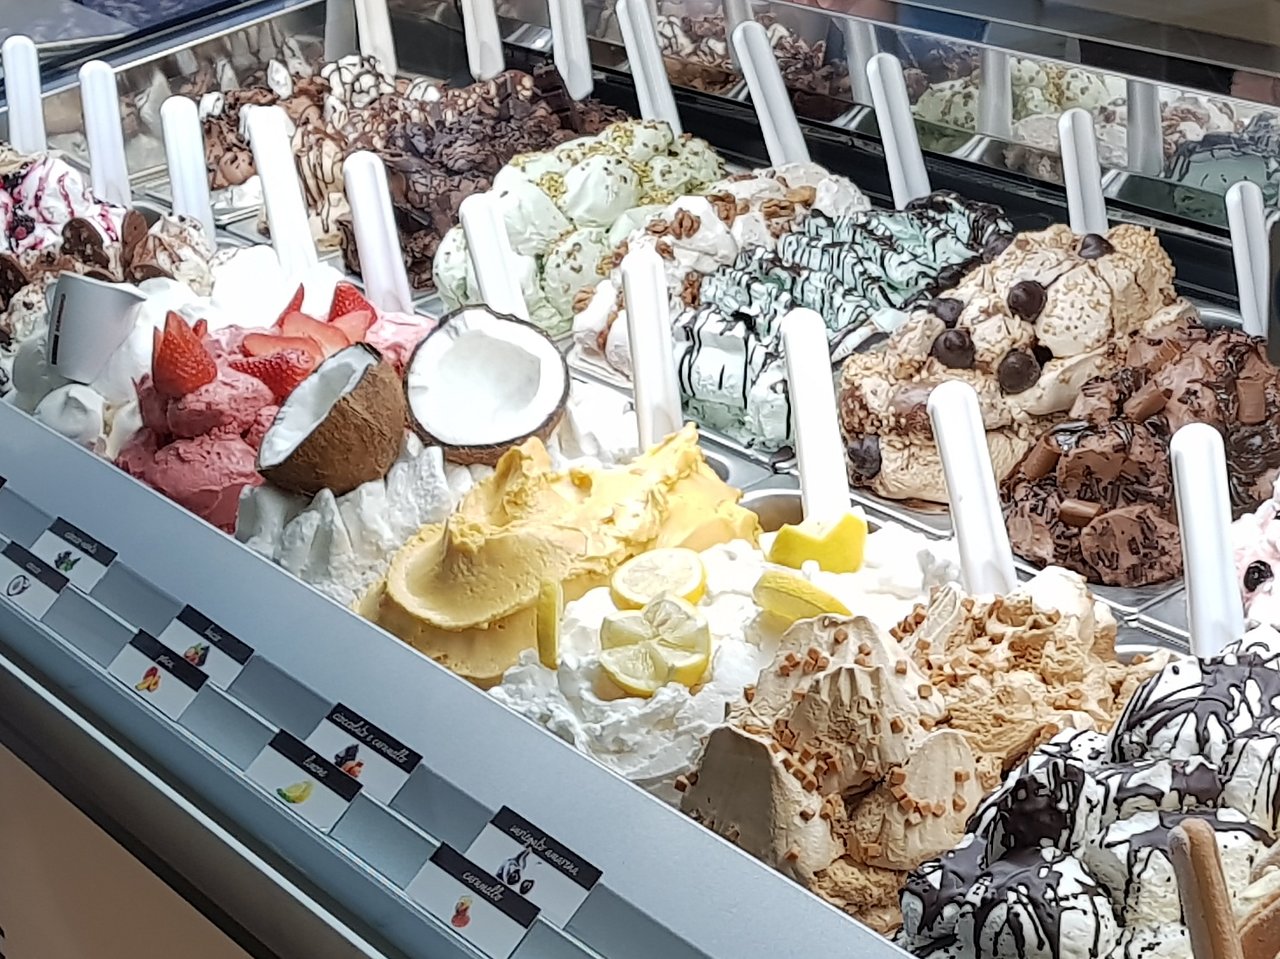 Crema & Cioccolato, Udine